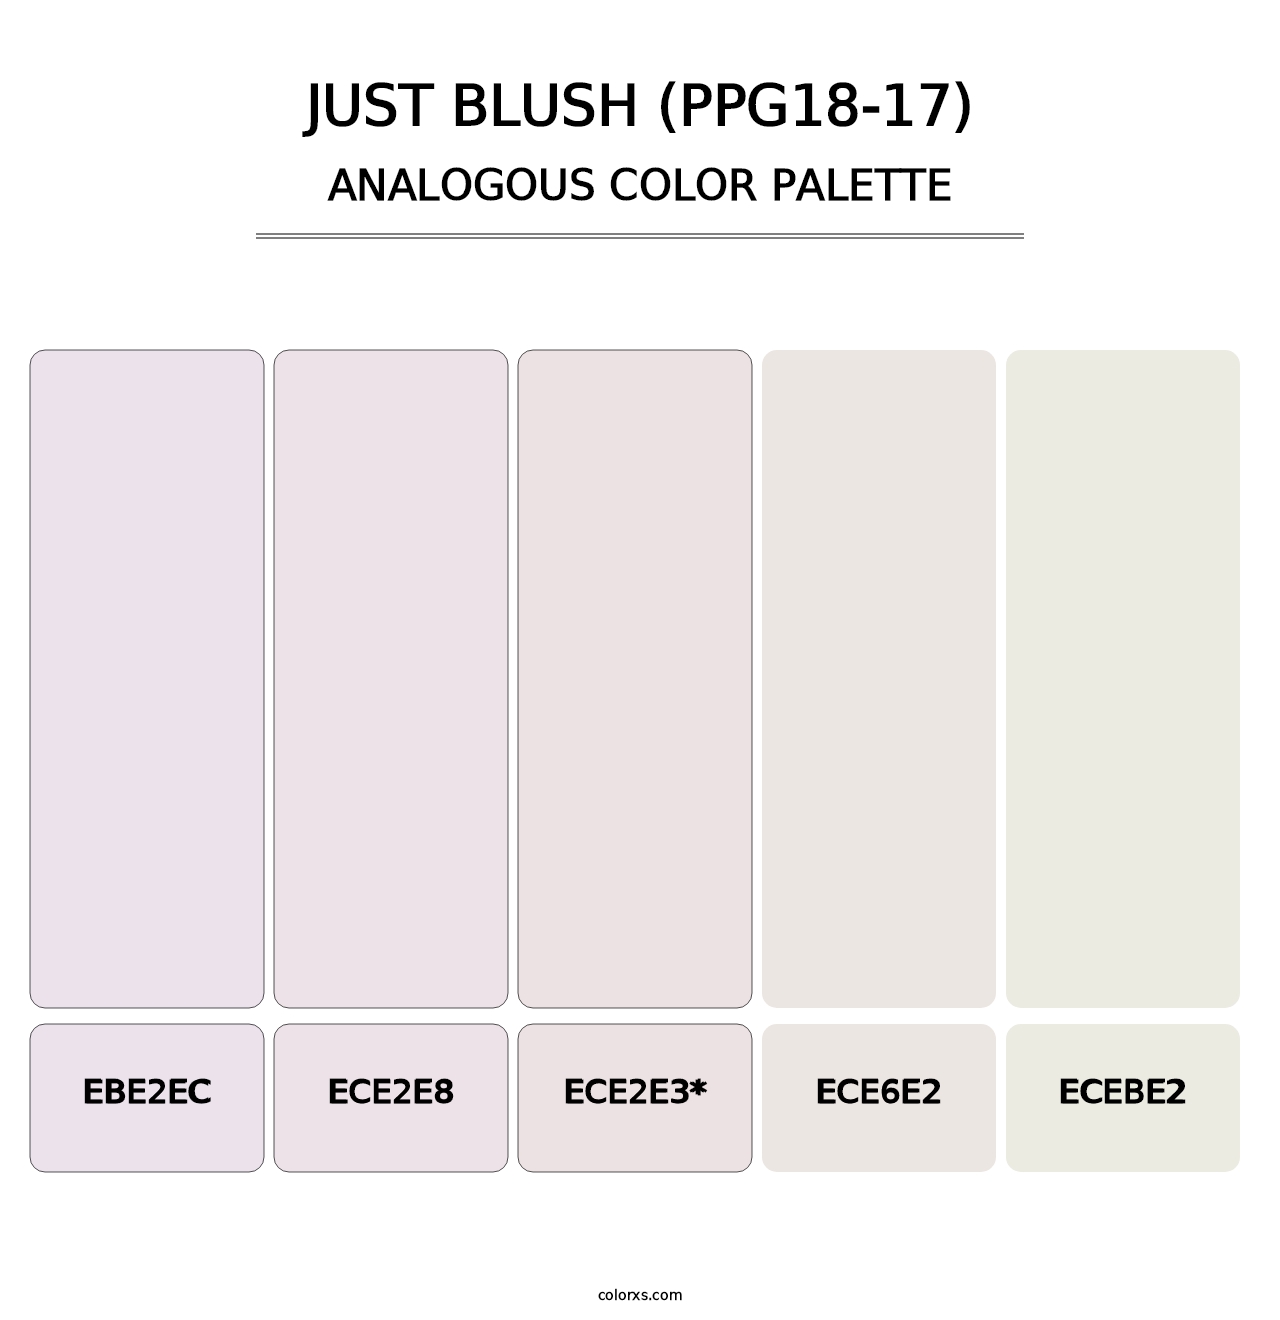 Just Blush (PPG18-17) - Analogous Color Palette